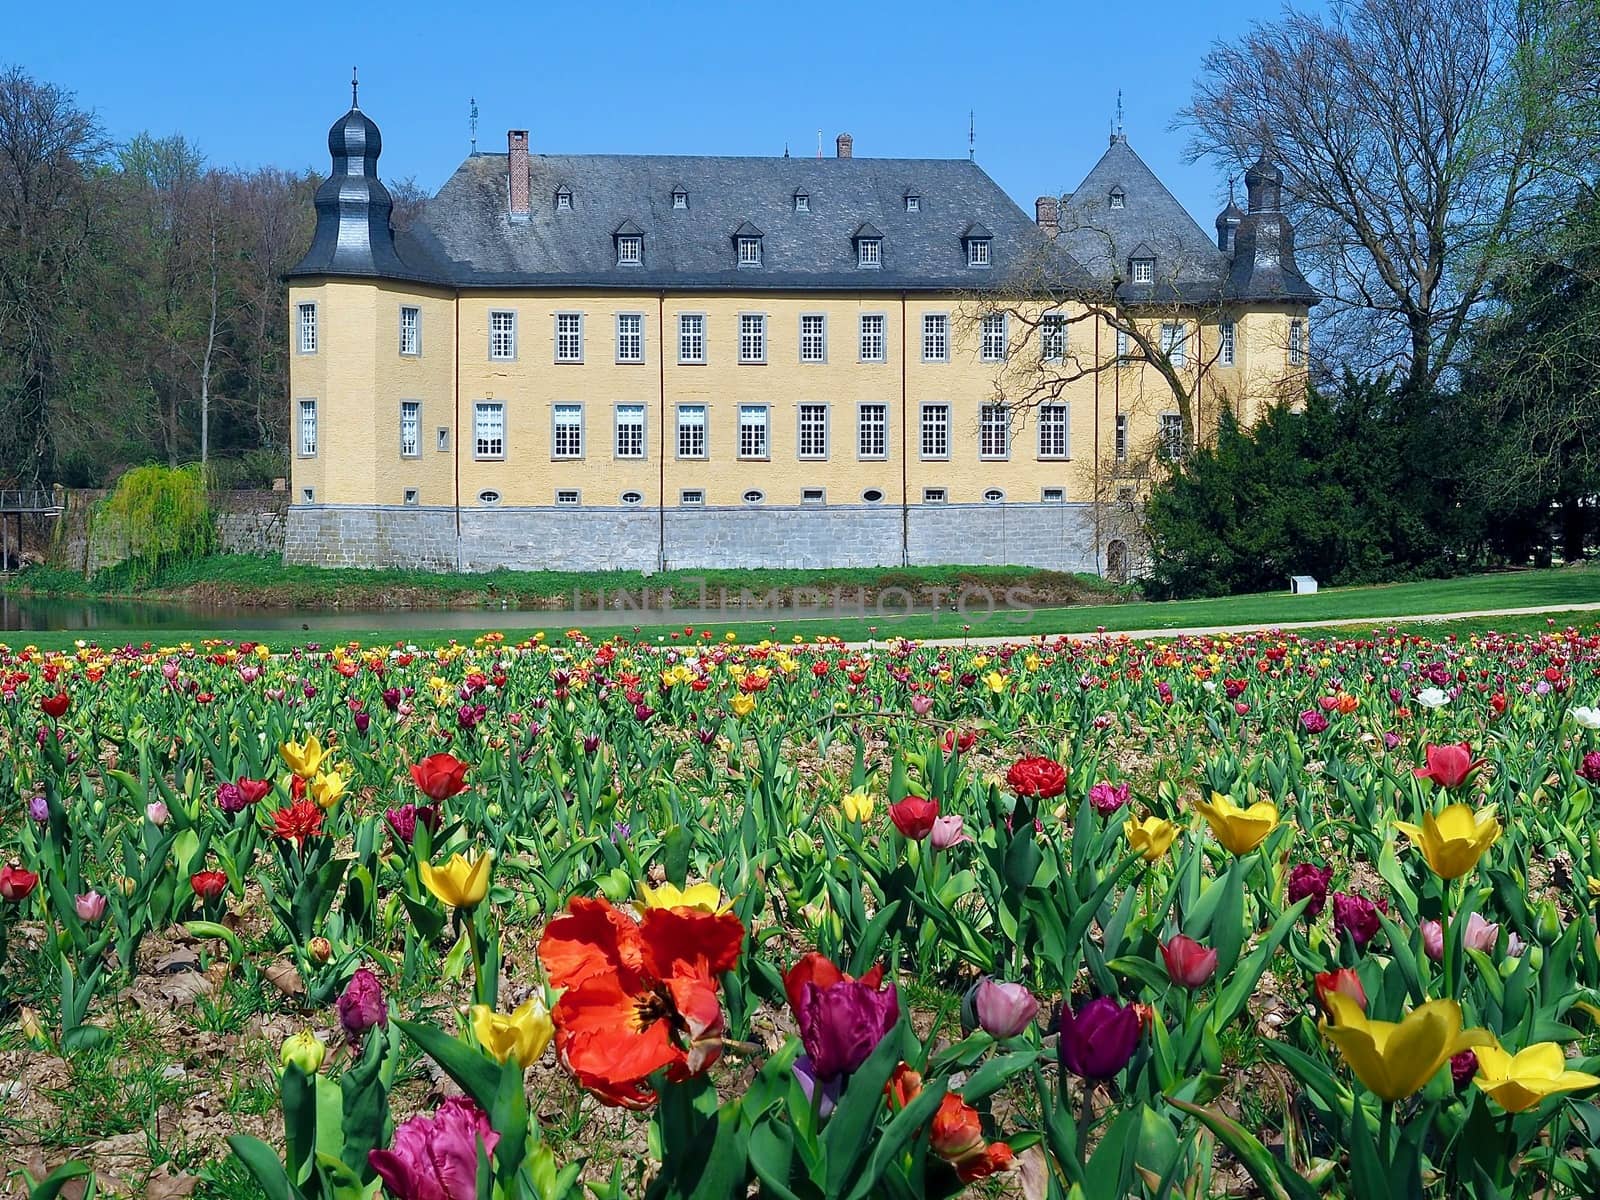 Castle of Schloss Dck in Juechen in spring by Stimmungsbilder